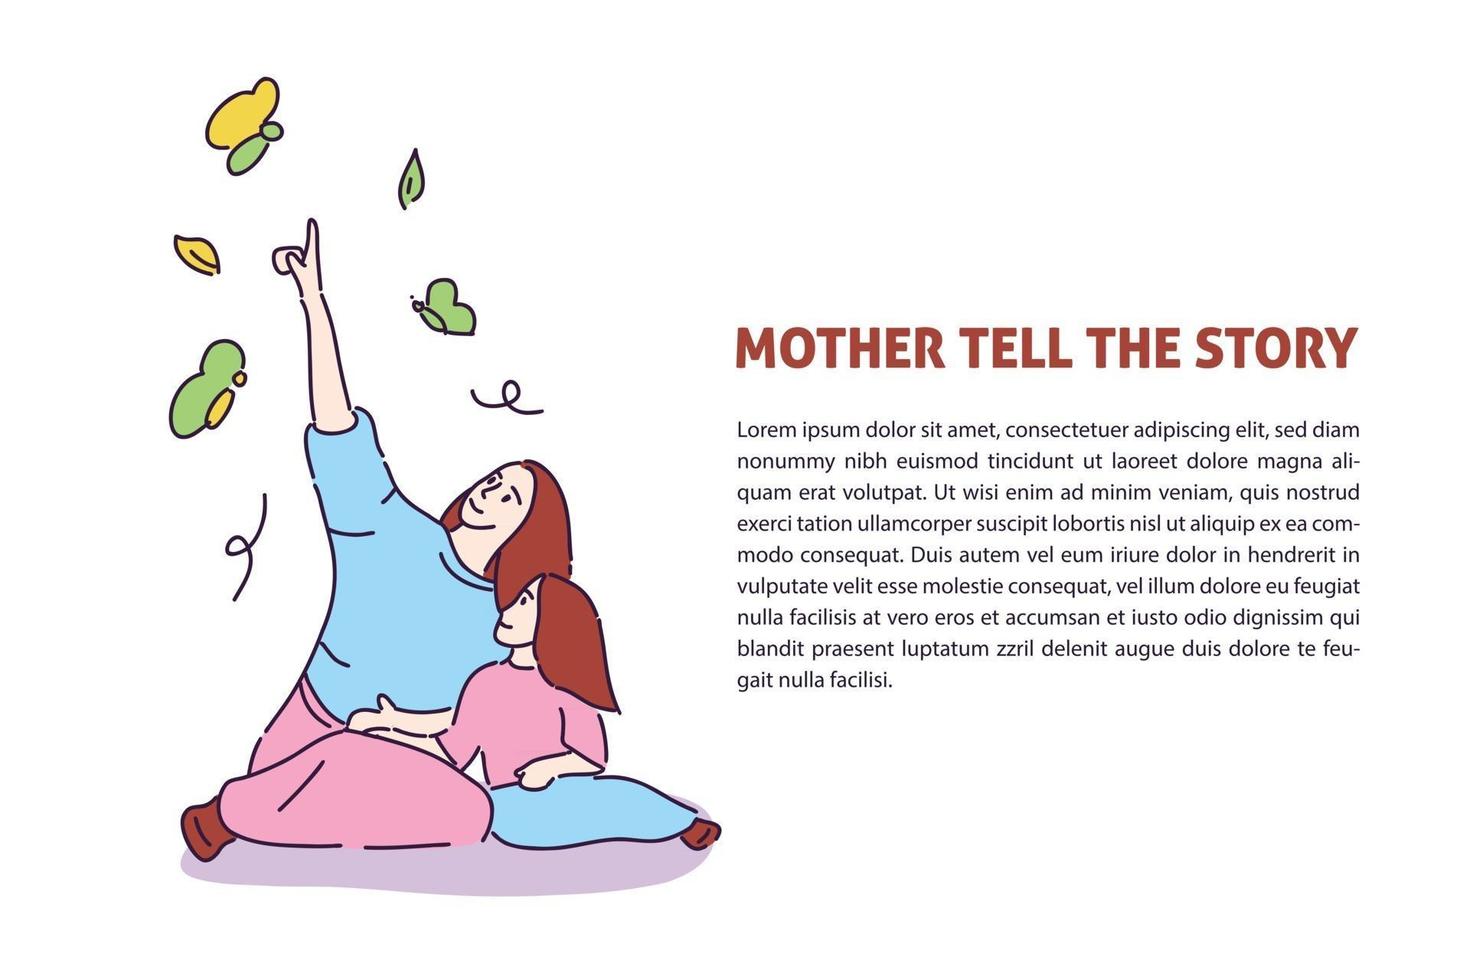 moeder vertelt het verhaal voor haar dochter met de hand getekende illustratie vector